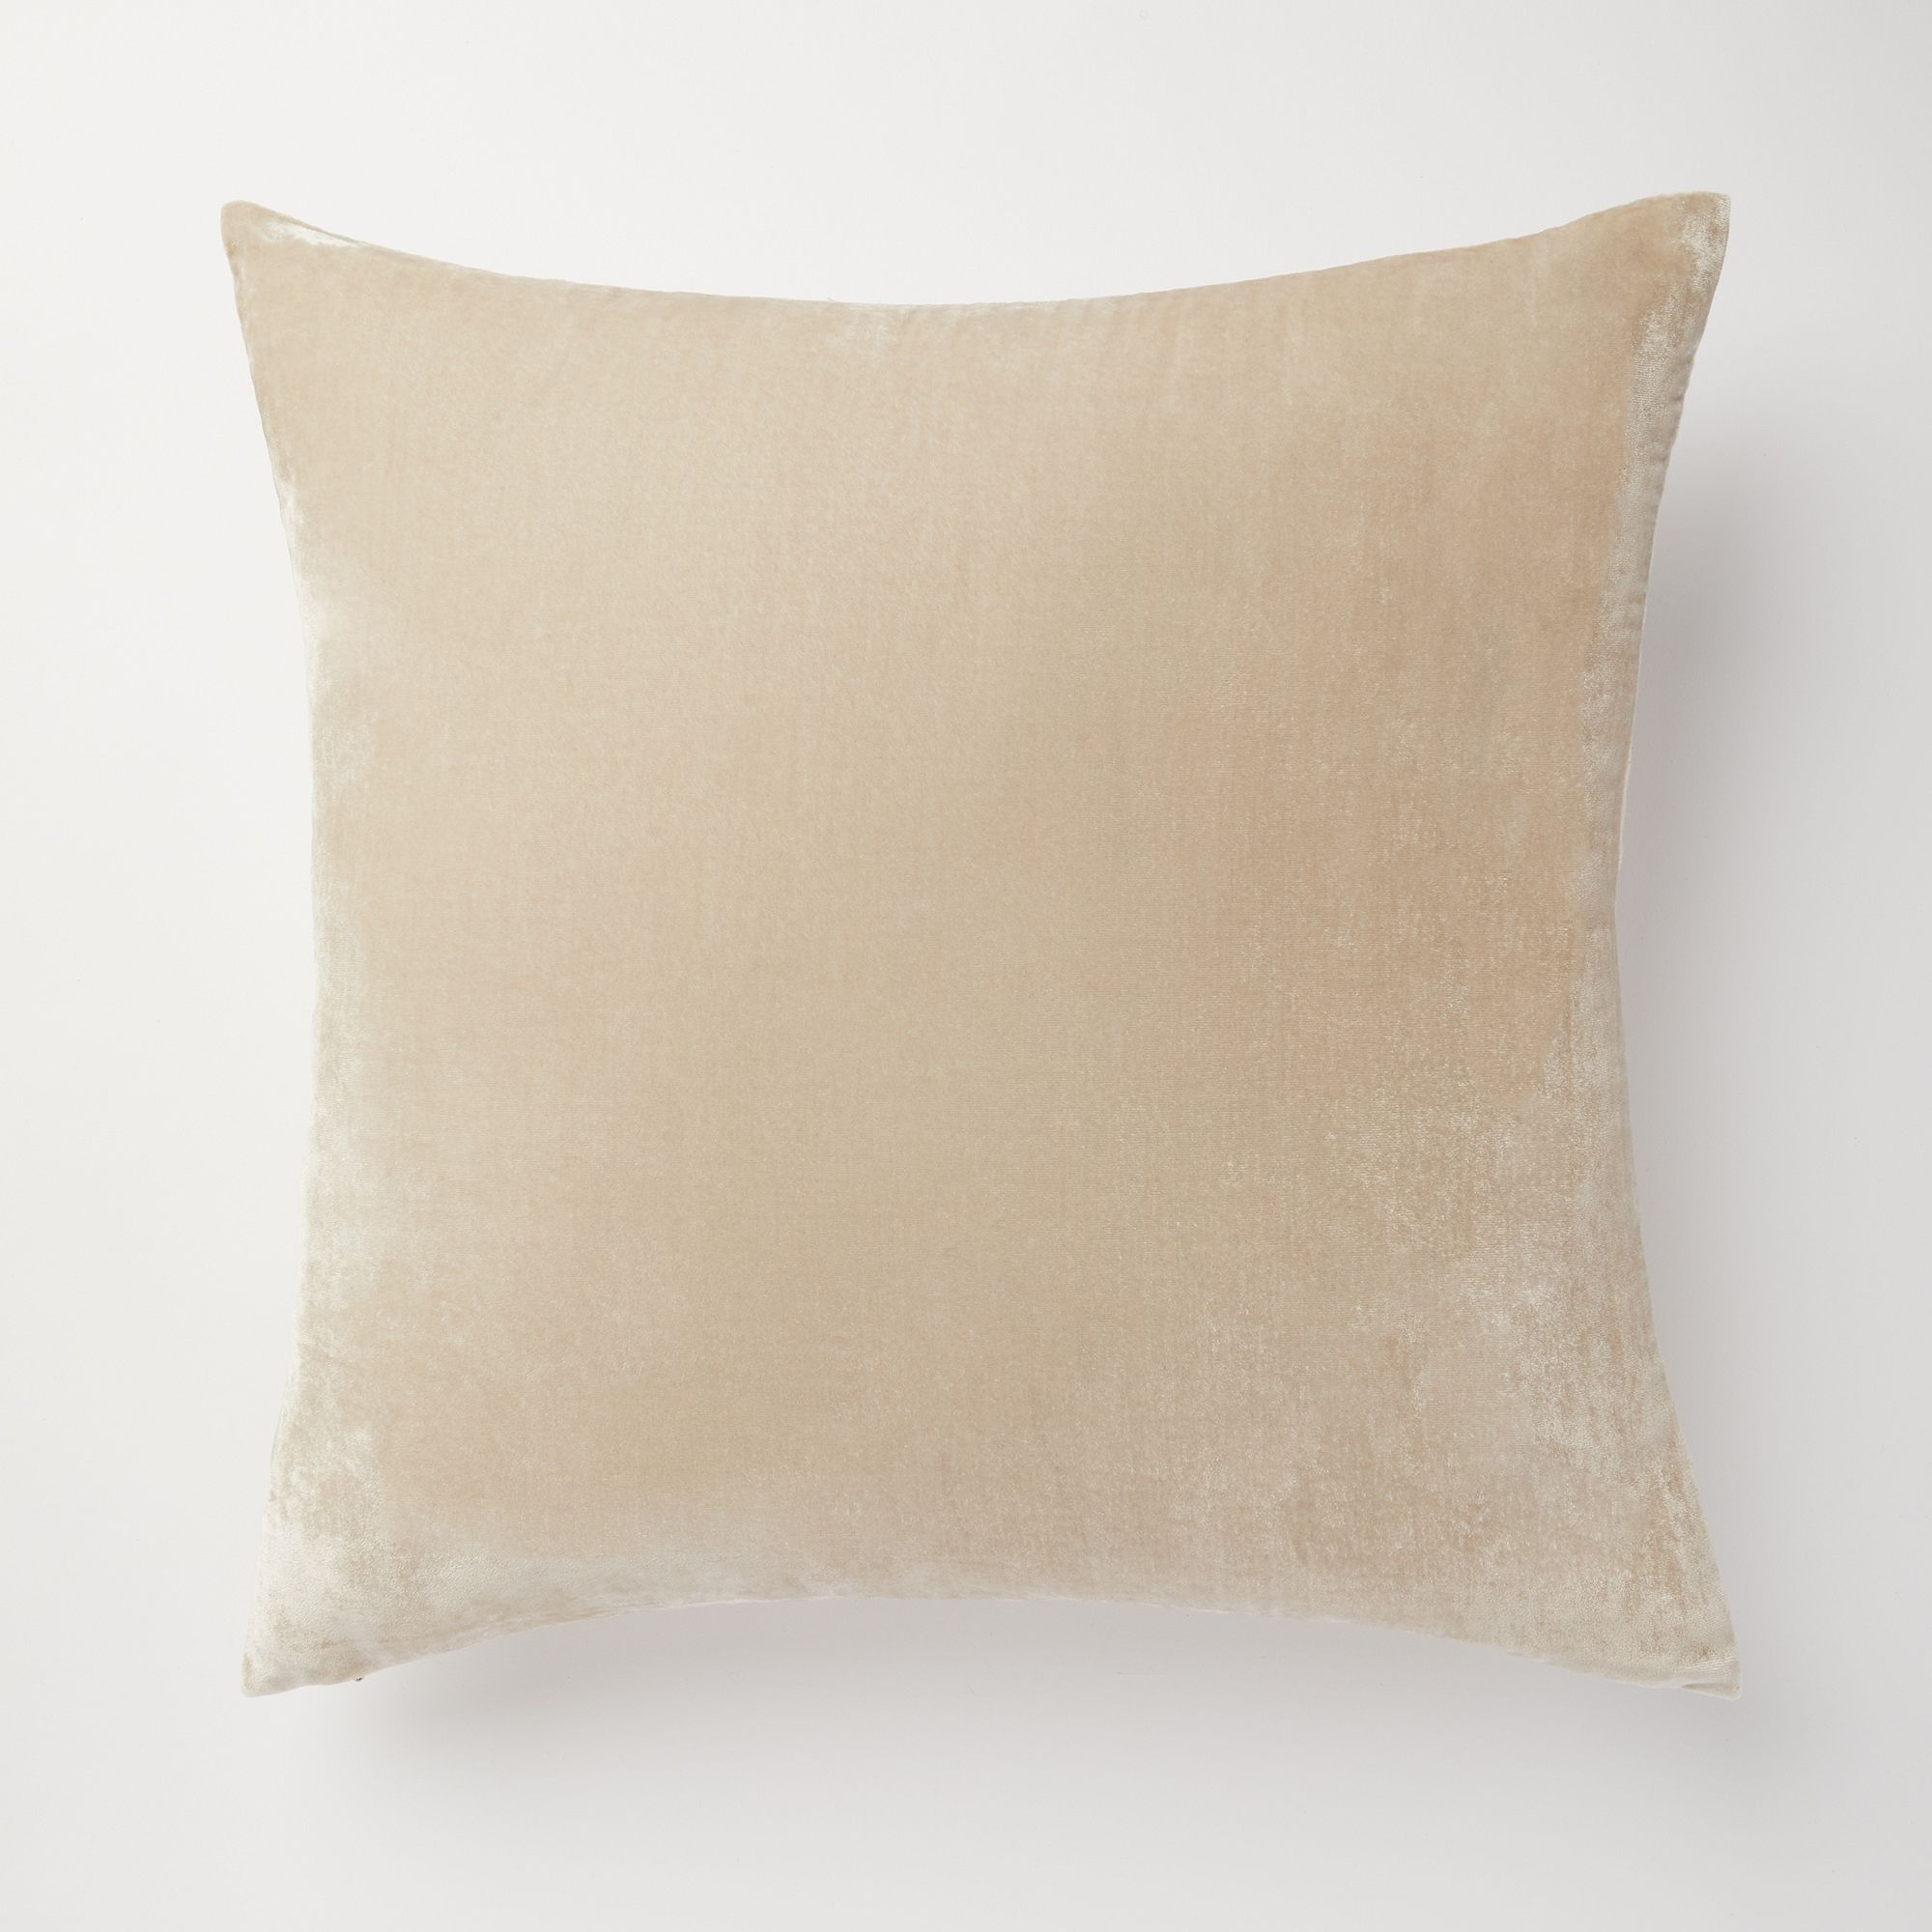 Lush Velvet Pillow Cover, Sand, 20x20 - Image 0